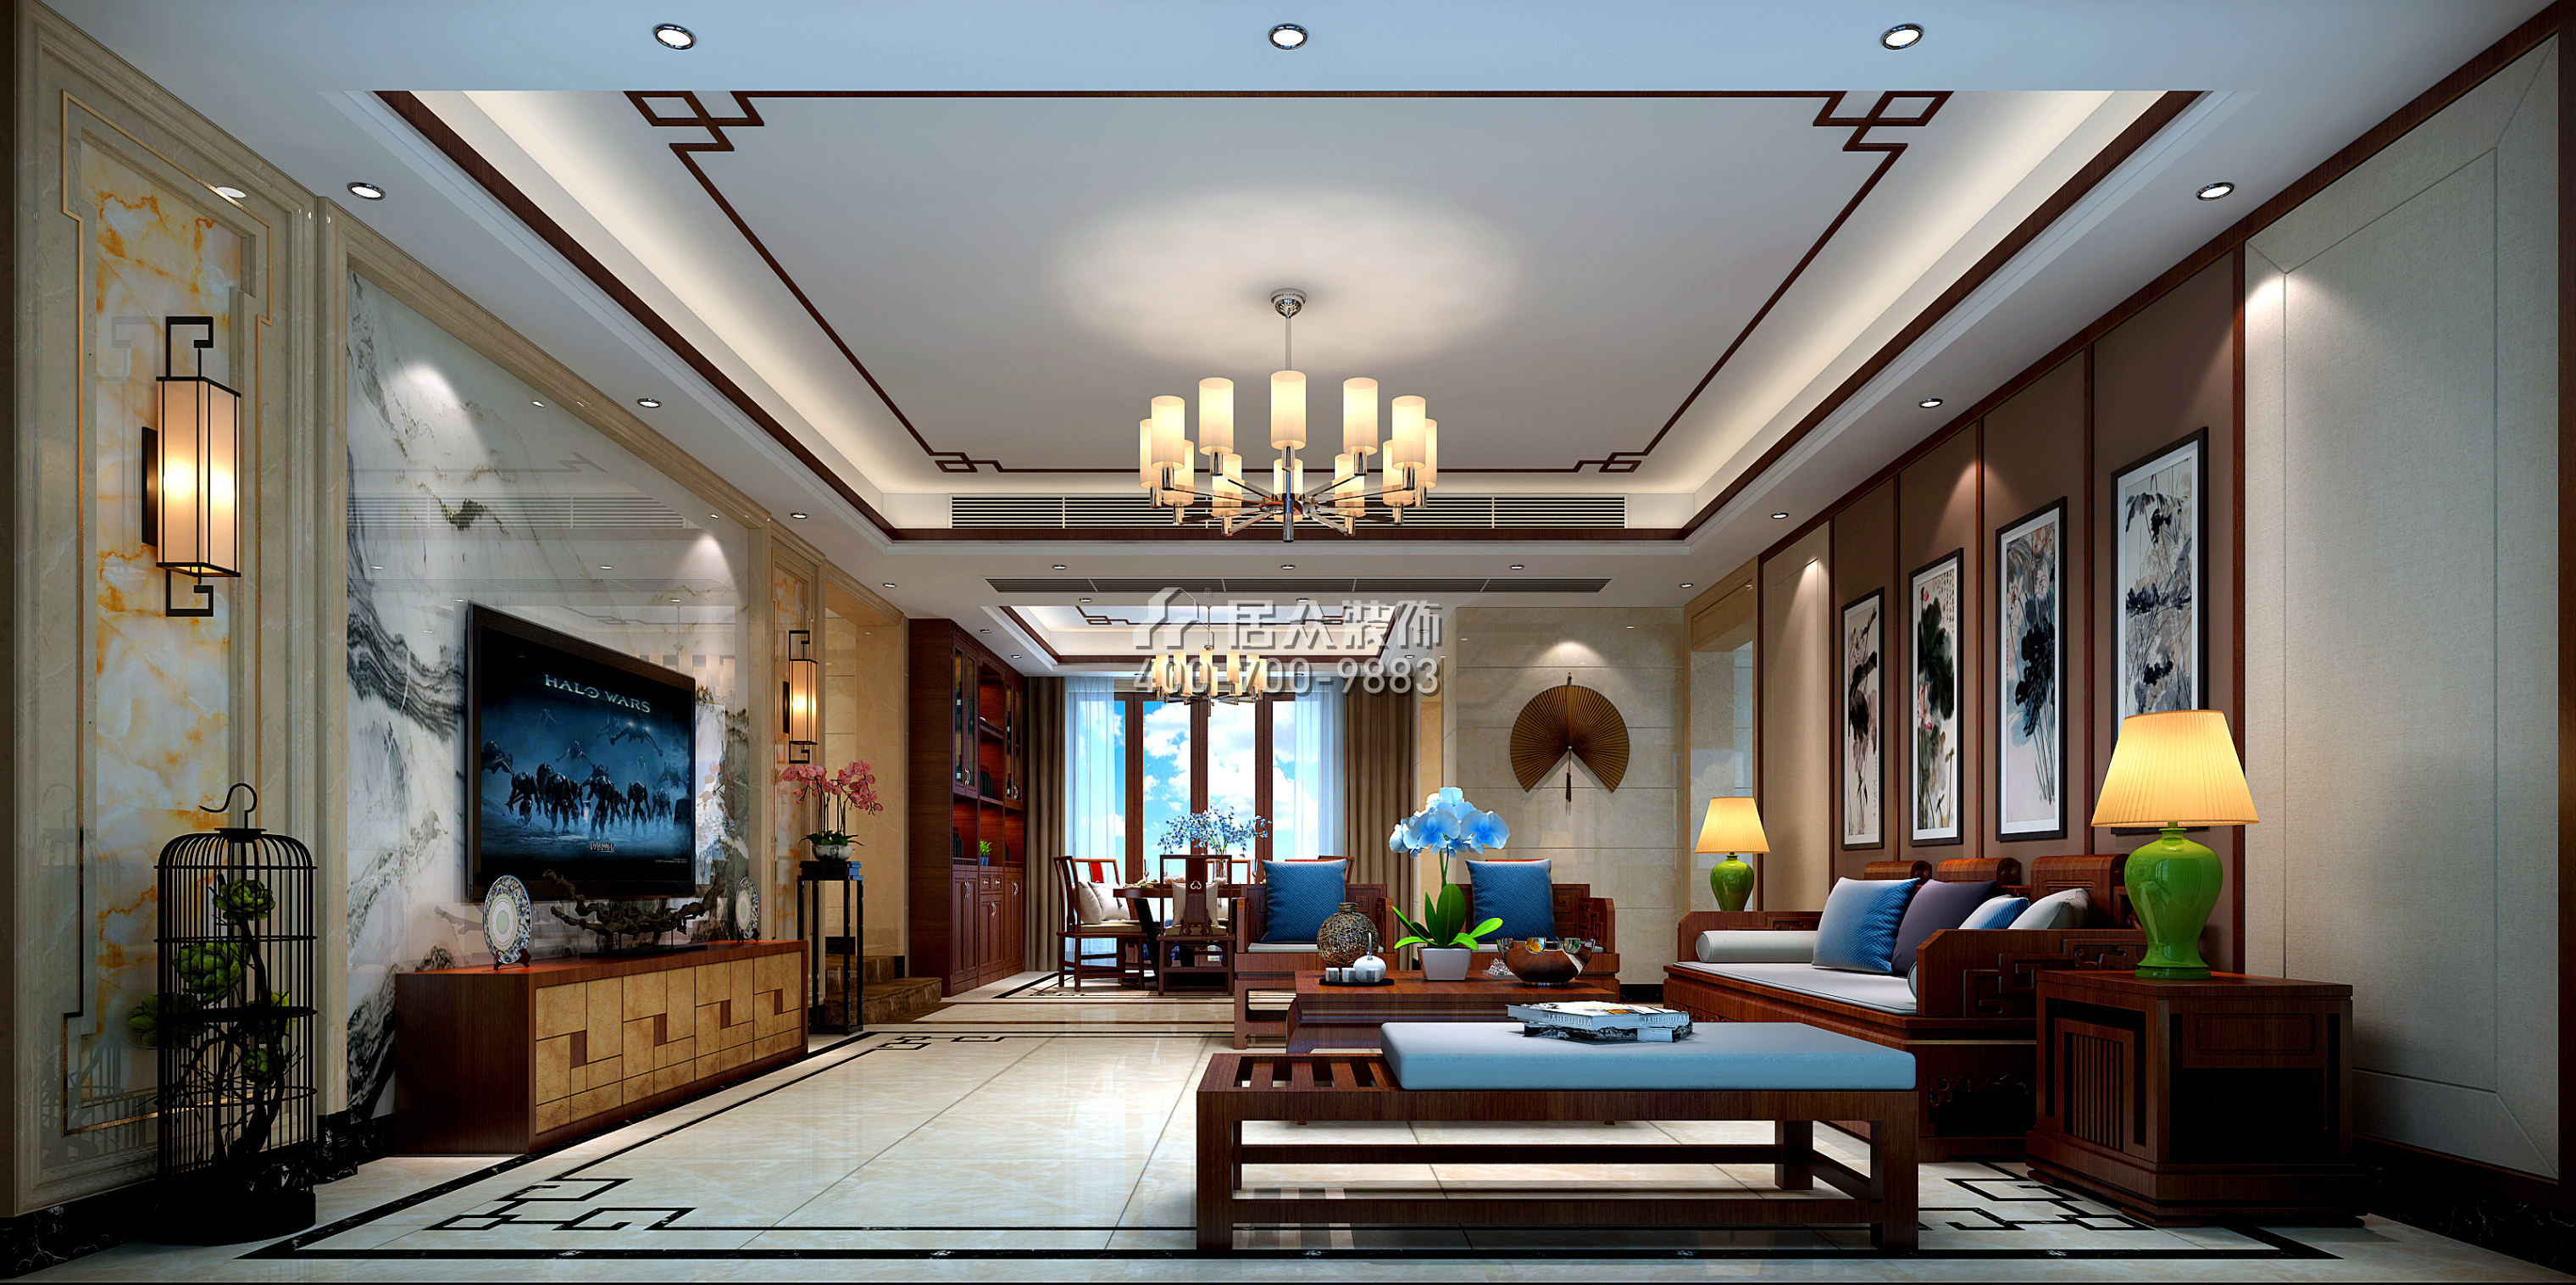 皓翔壹城中心240平方米中式風格平層戶型客廳裝修效果圖